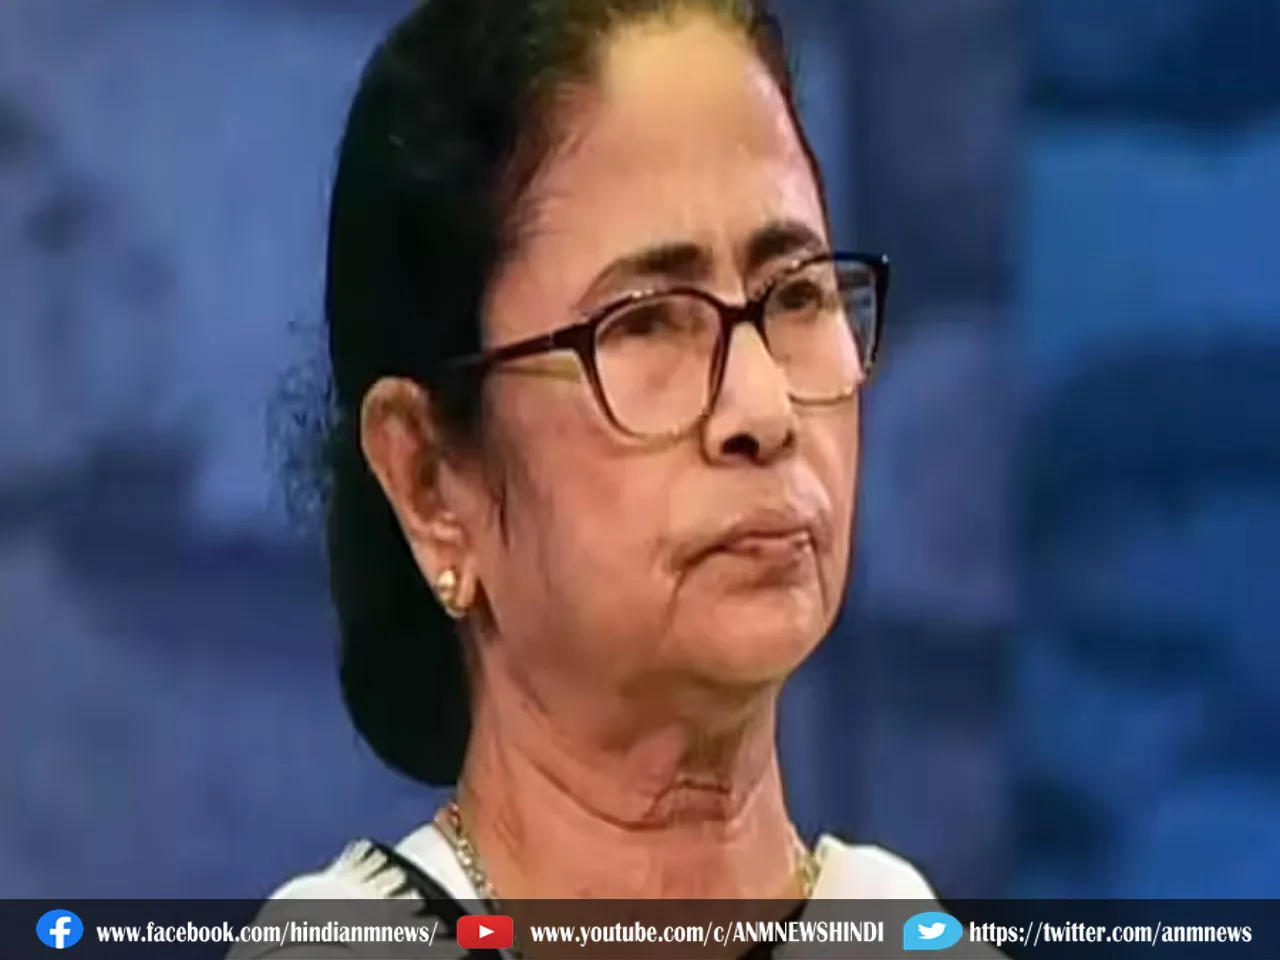 Mamata Banerjee : गंगासागर मेला व्यापक सुरक्षा और सुविधाओं के साथ आयोजित किया जाएगा